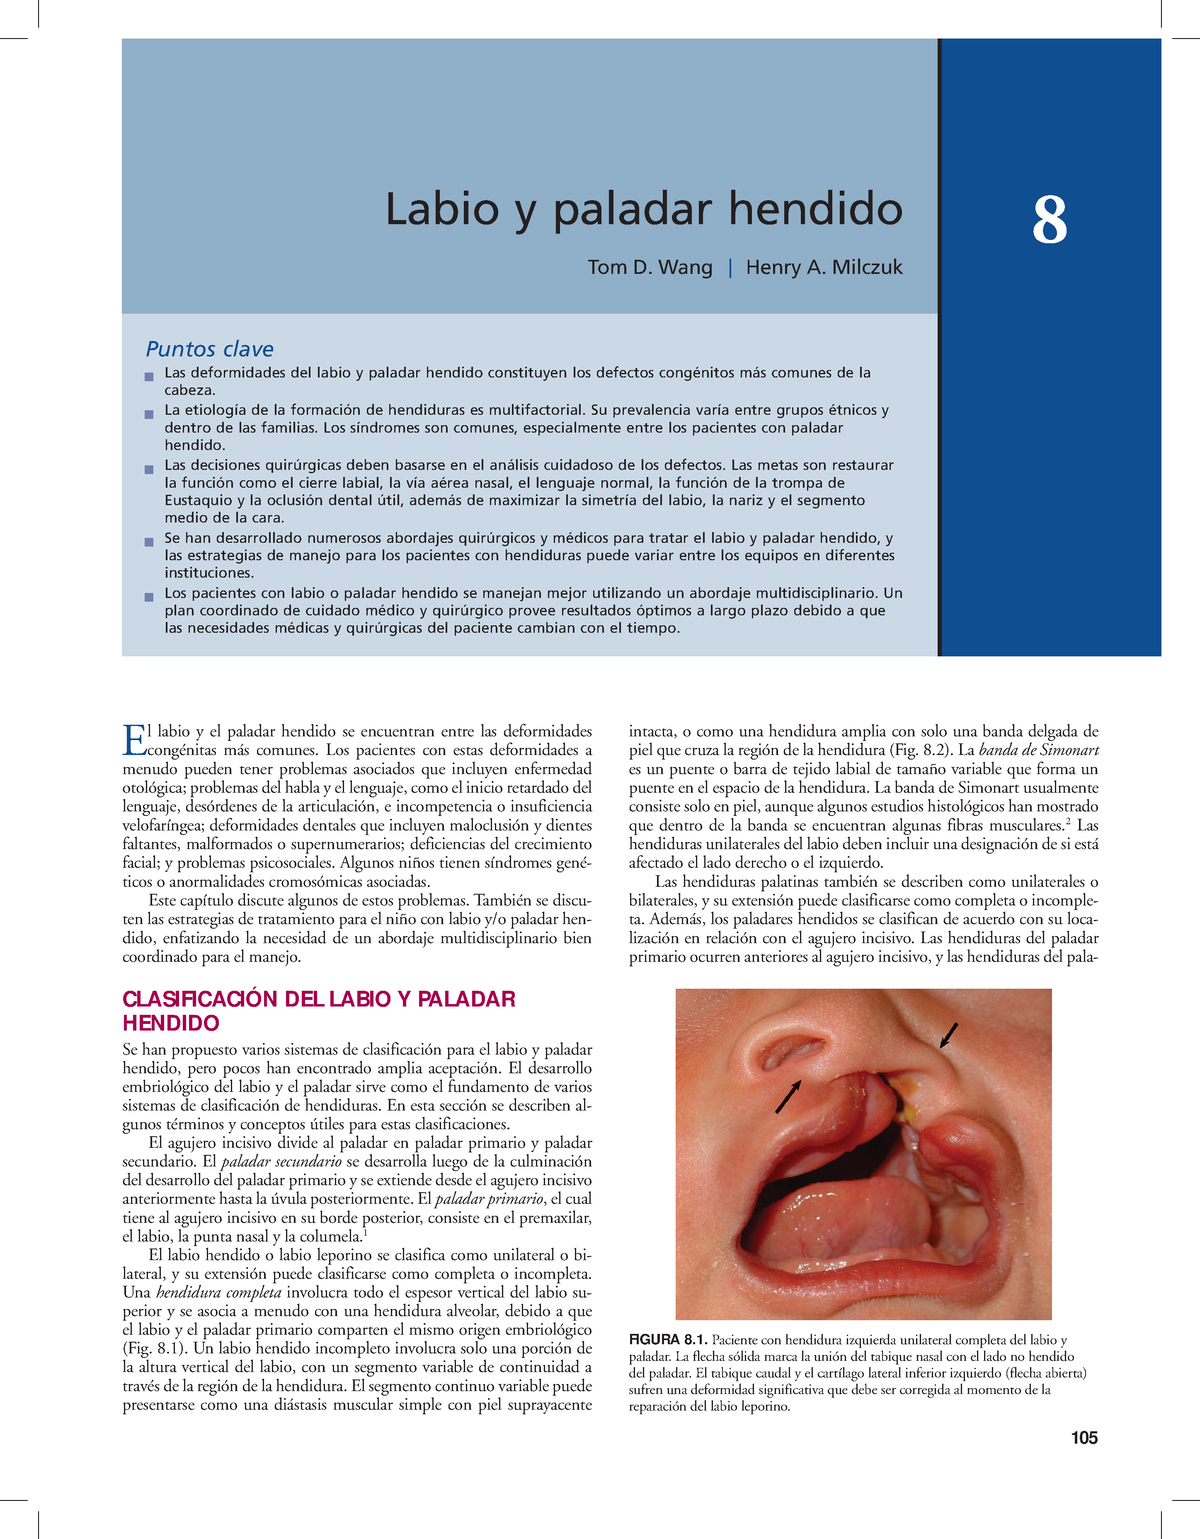 Paladar Y Labio Leporino Patologia Bucal Labio Y Paladar Hendido 105 Capítulo 8 105 Tom D 8213